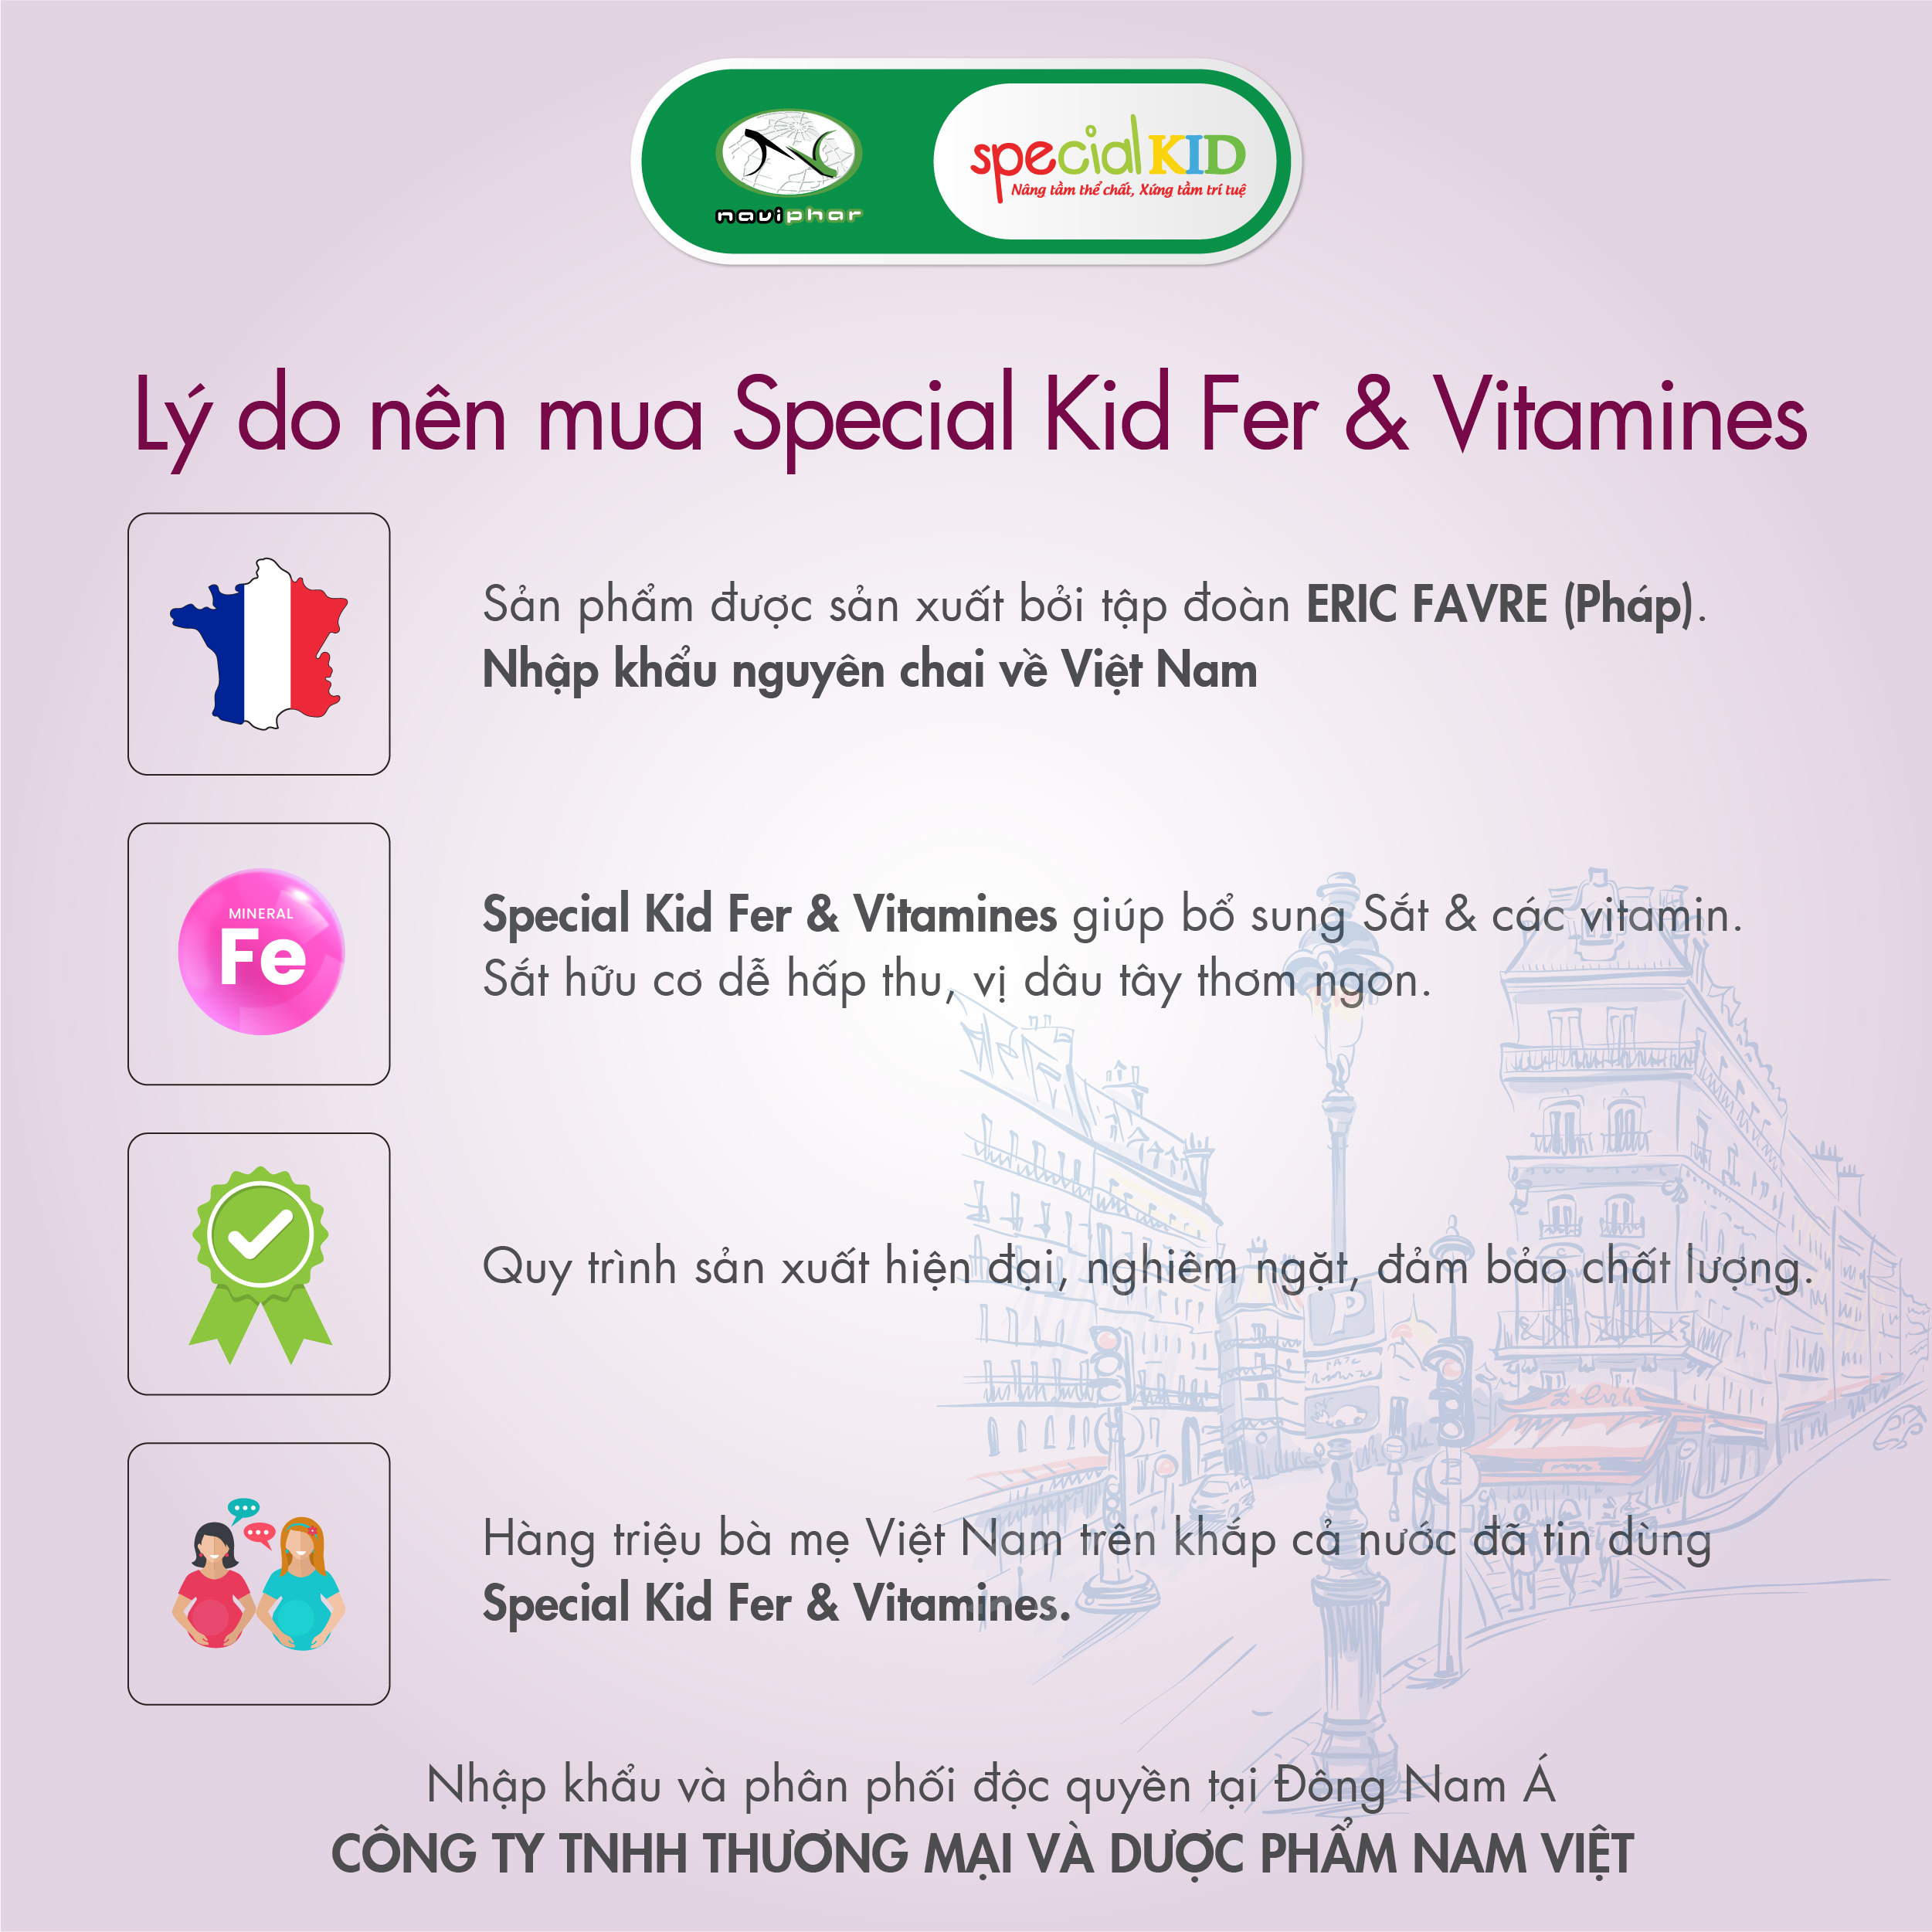 SPECIAL KID FER & VITAMINES - Siro Bổ sung sắt và các vitamin C, B2, B9, B12 - Giúp giảm thiếu máu do thiếu sắt - Nhập khẩu Pháp (125ml)